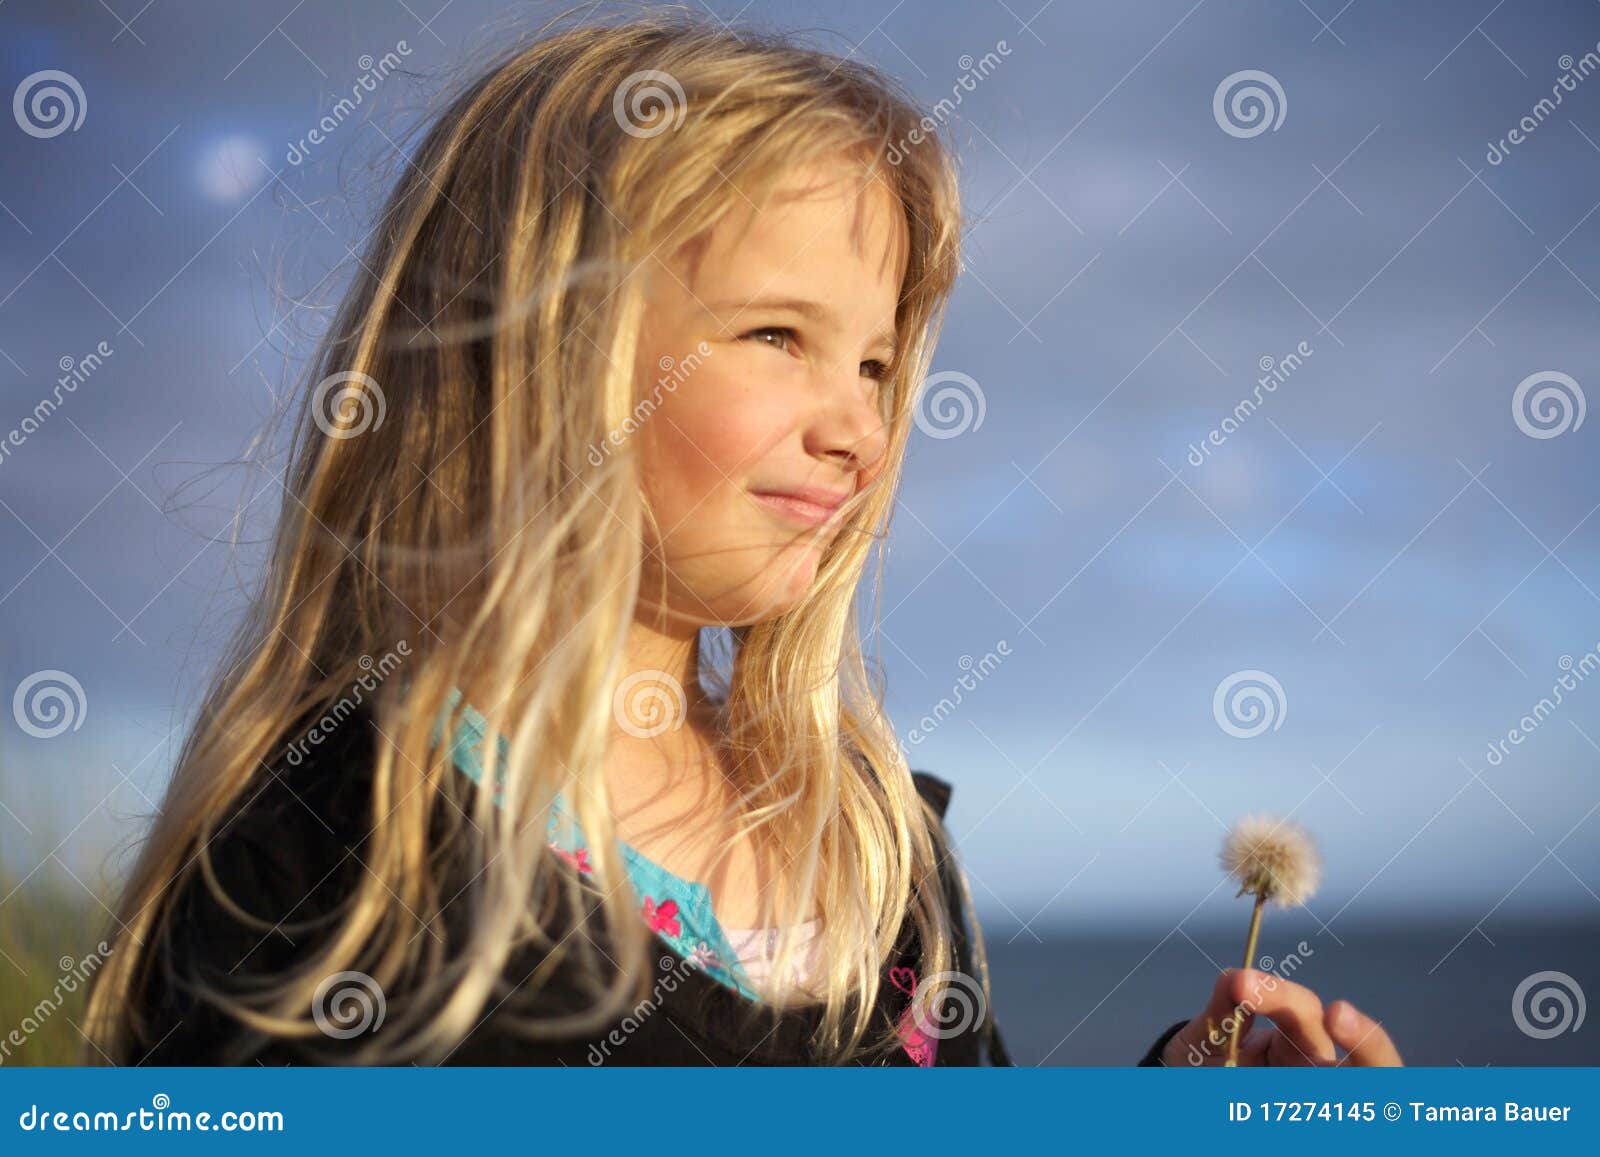 Little Girl Holding Dandelion Flower Stock Image - Image of flowers ...